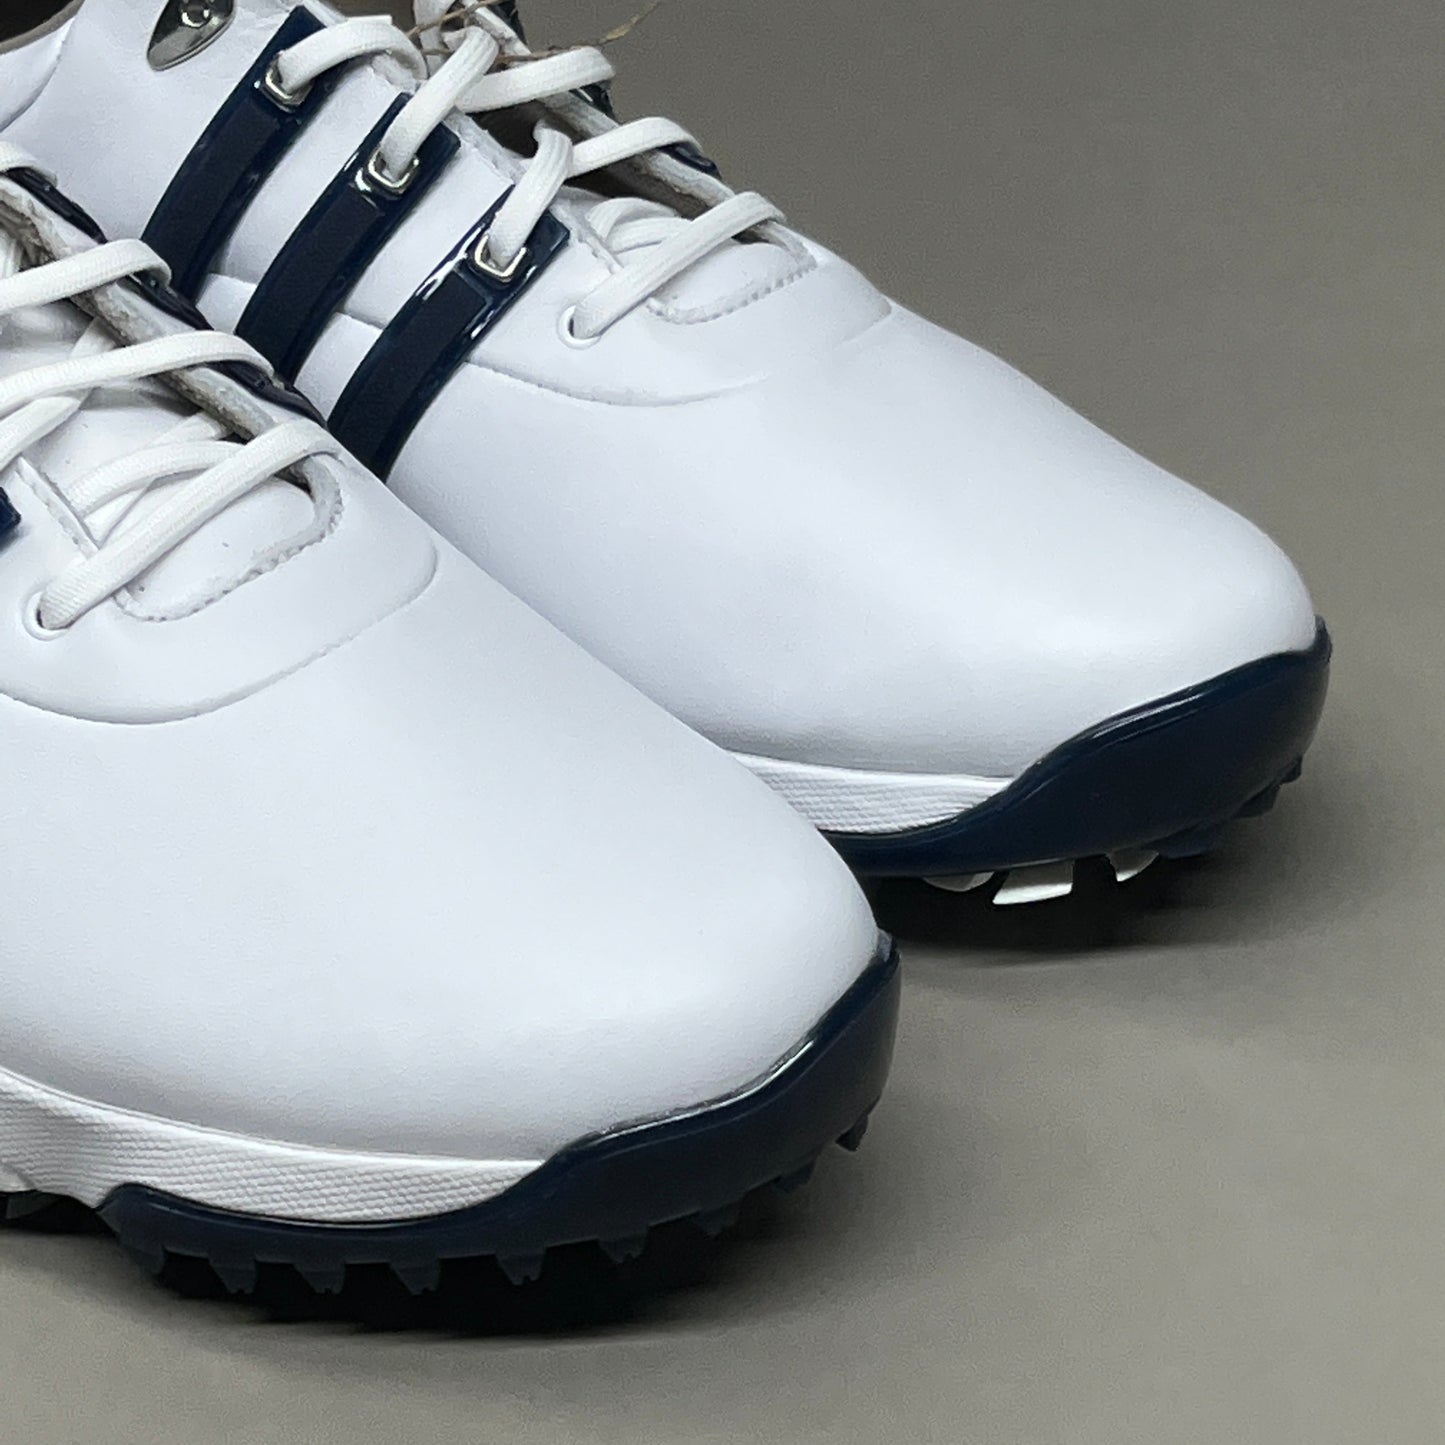 ADIDAS Golf Shoes TOUR360 22 Leather Men's Sz 7.5 White / Navy / Silver GV7247 (New)